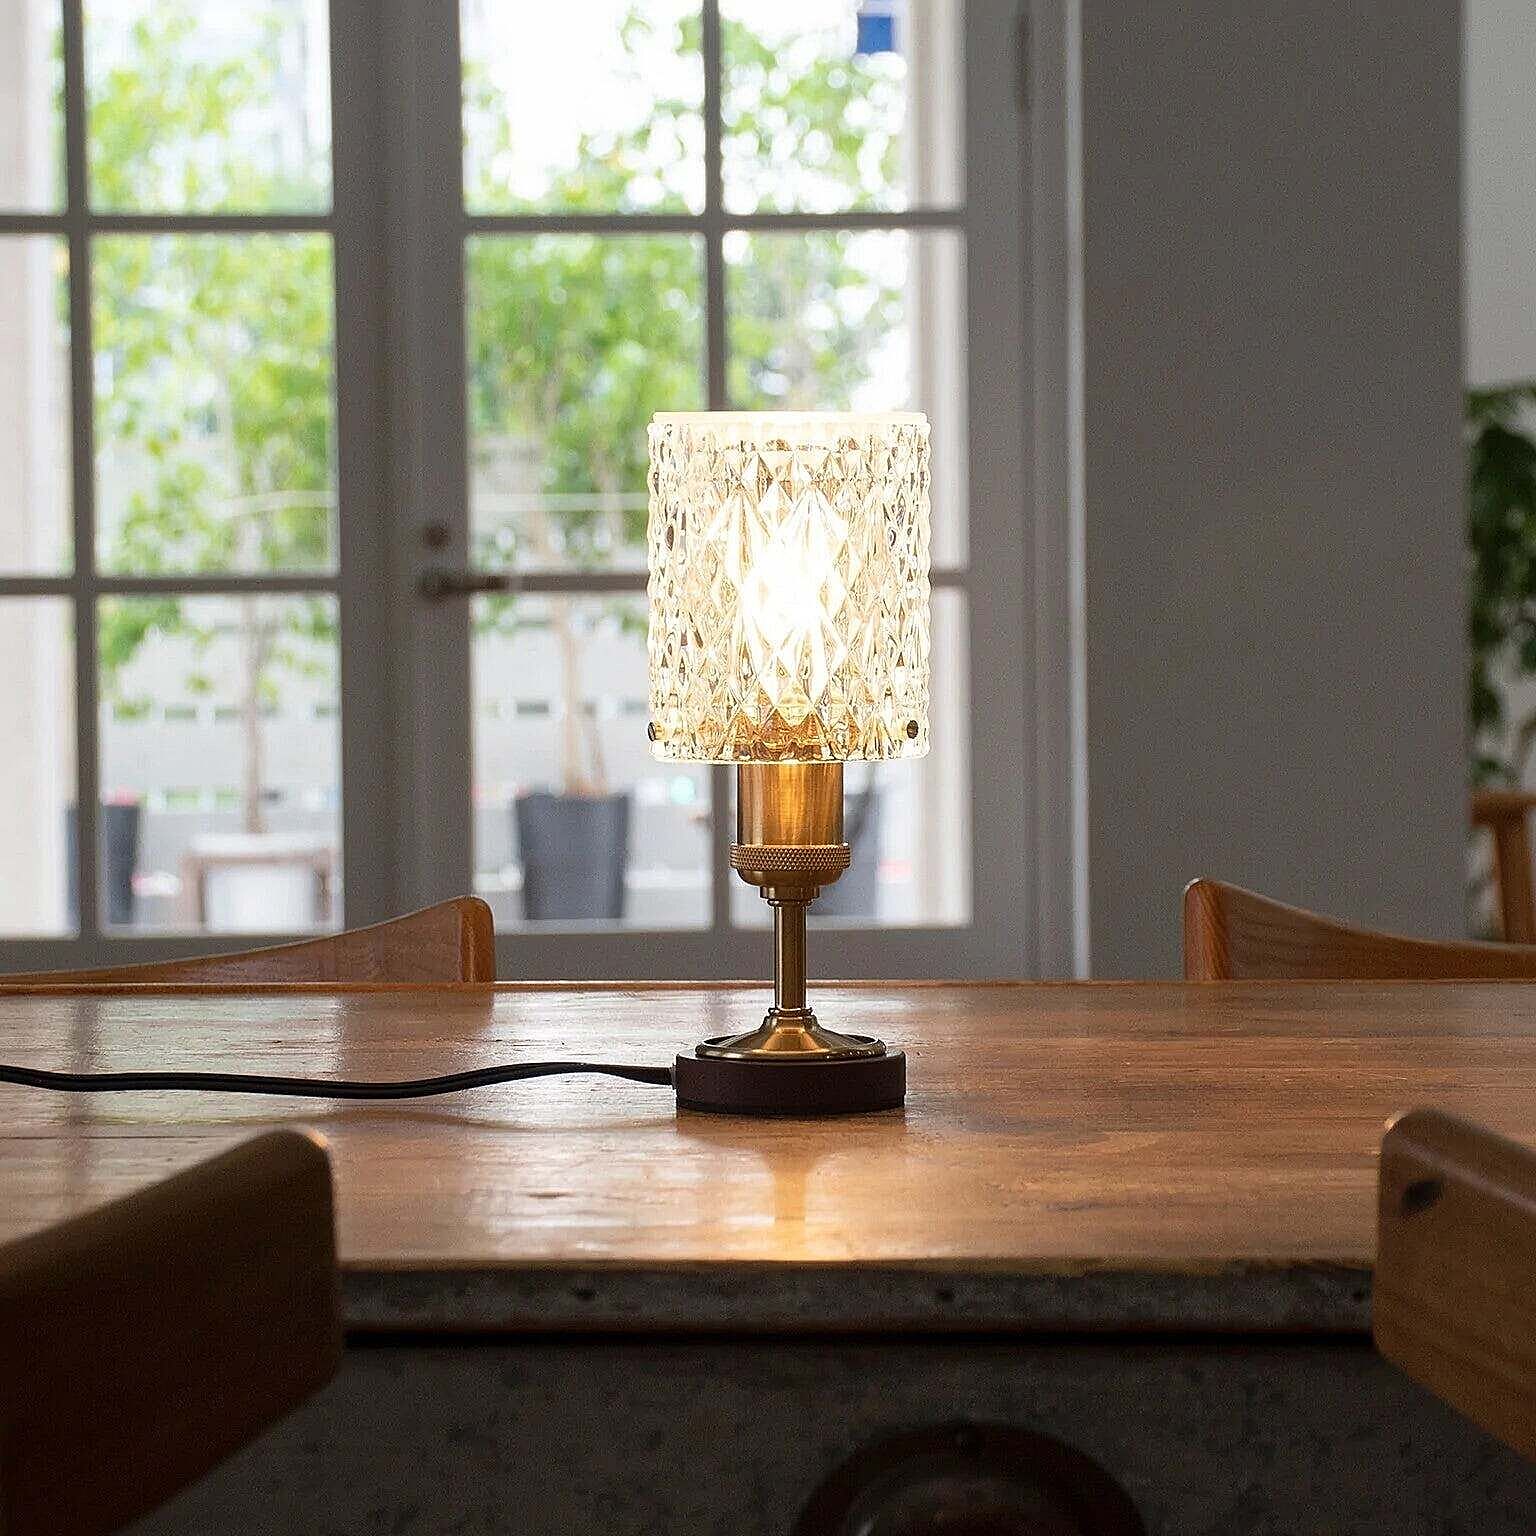 Ampoule ロイエ アンティークゴールド テーブルランプ 照明 ラグジュアリー 間接照明 LED E17 通販  家具とインテリアの通販【RoomClipショッピング】